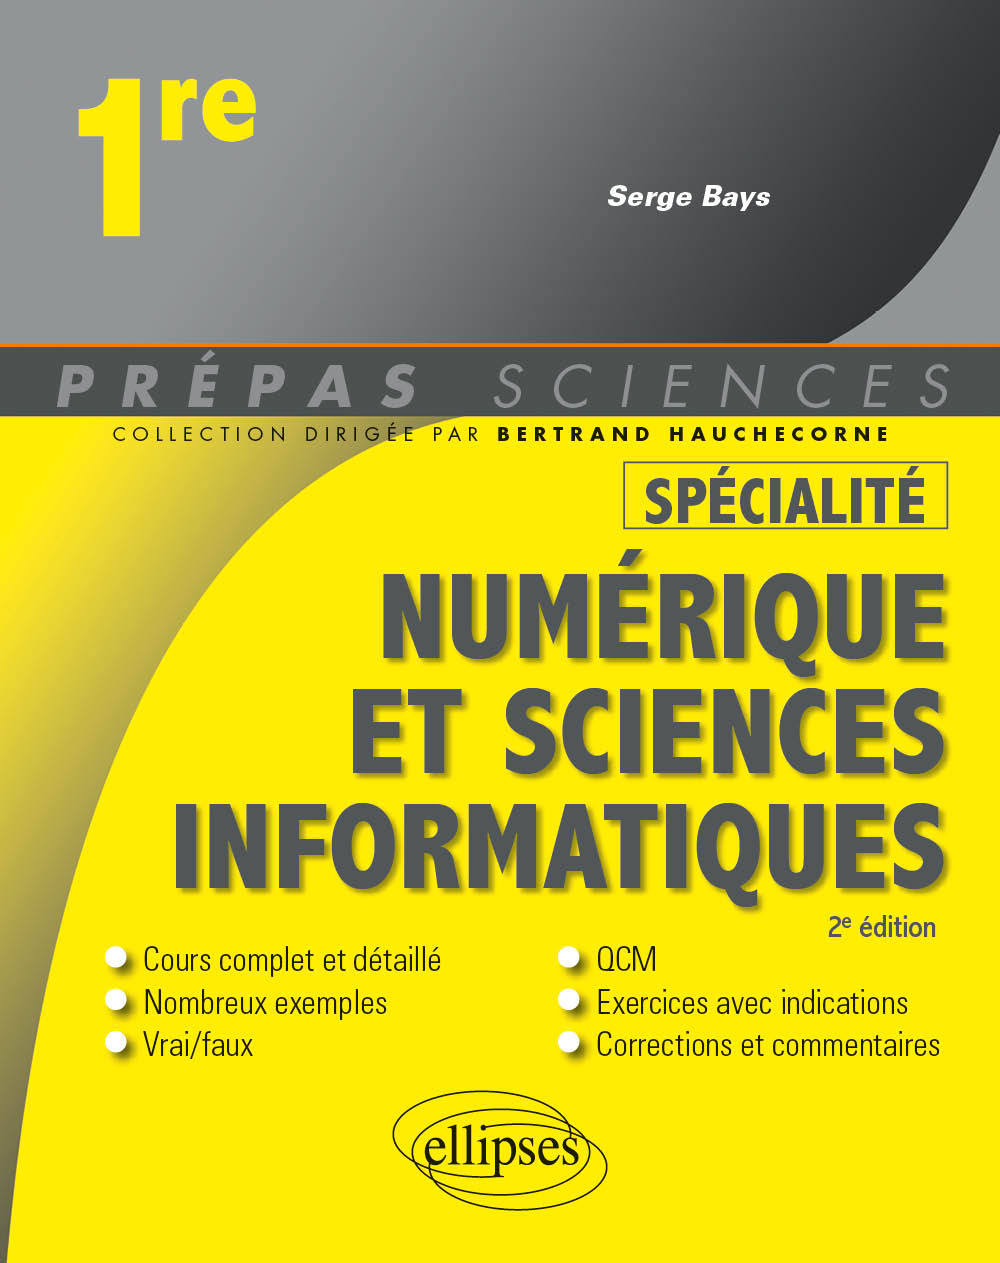 Kniha Spécialité Numérique et sciences informatiques - Première Bays